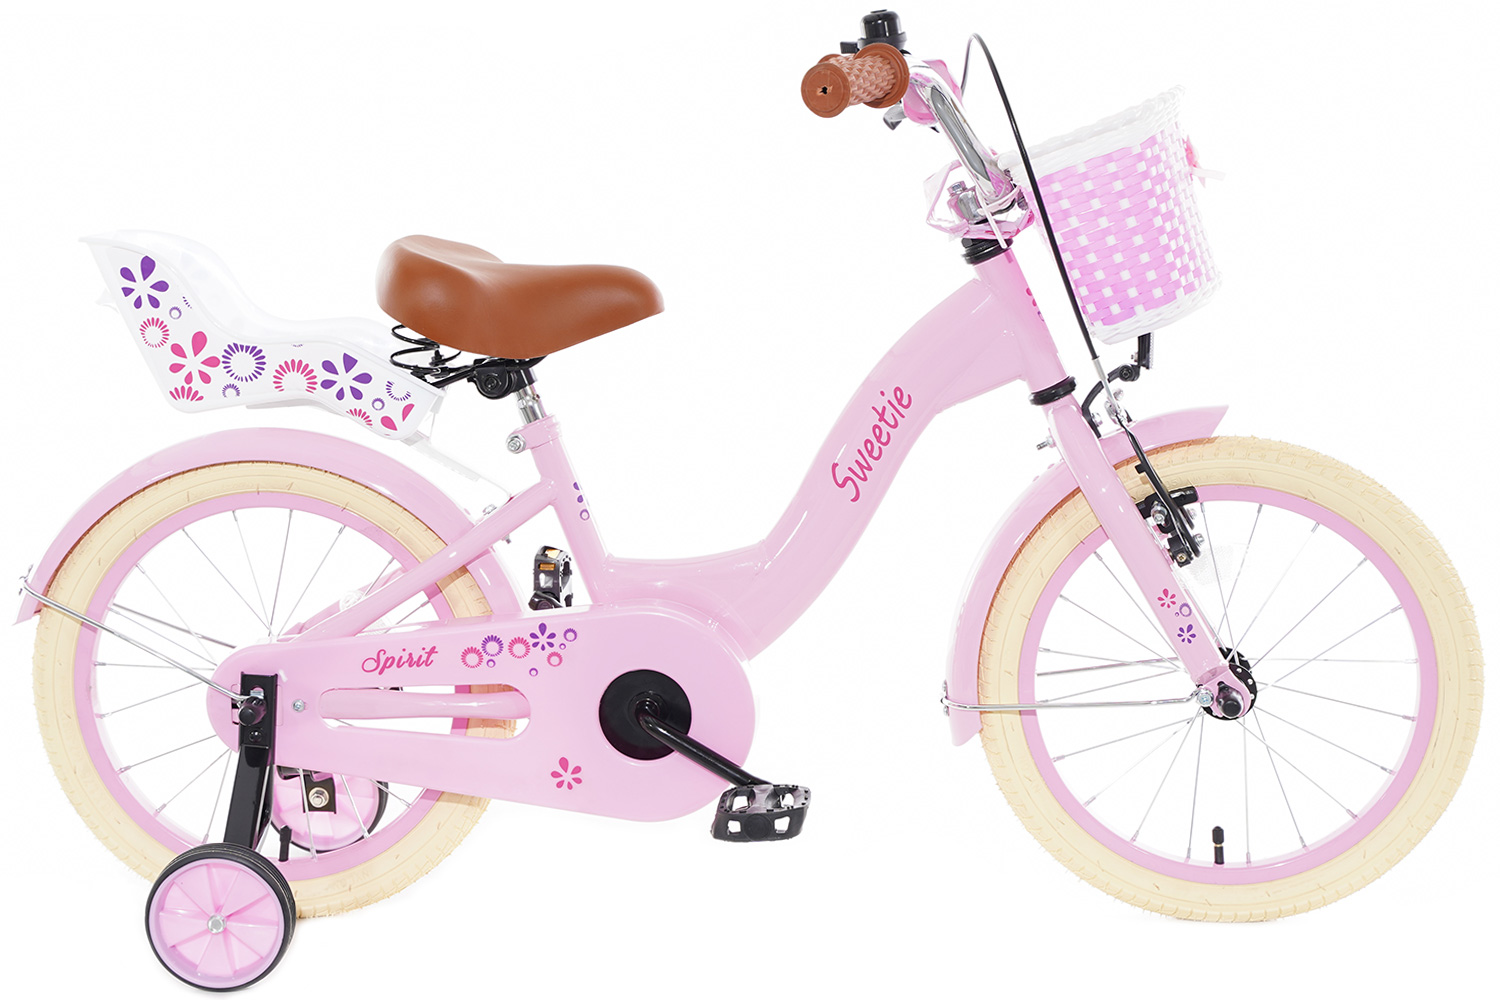 Pracht Afdrukken broeden Spirit Sweetie Roze 16 inch - Meisjesfiets - City-Bikes.nl